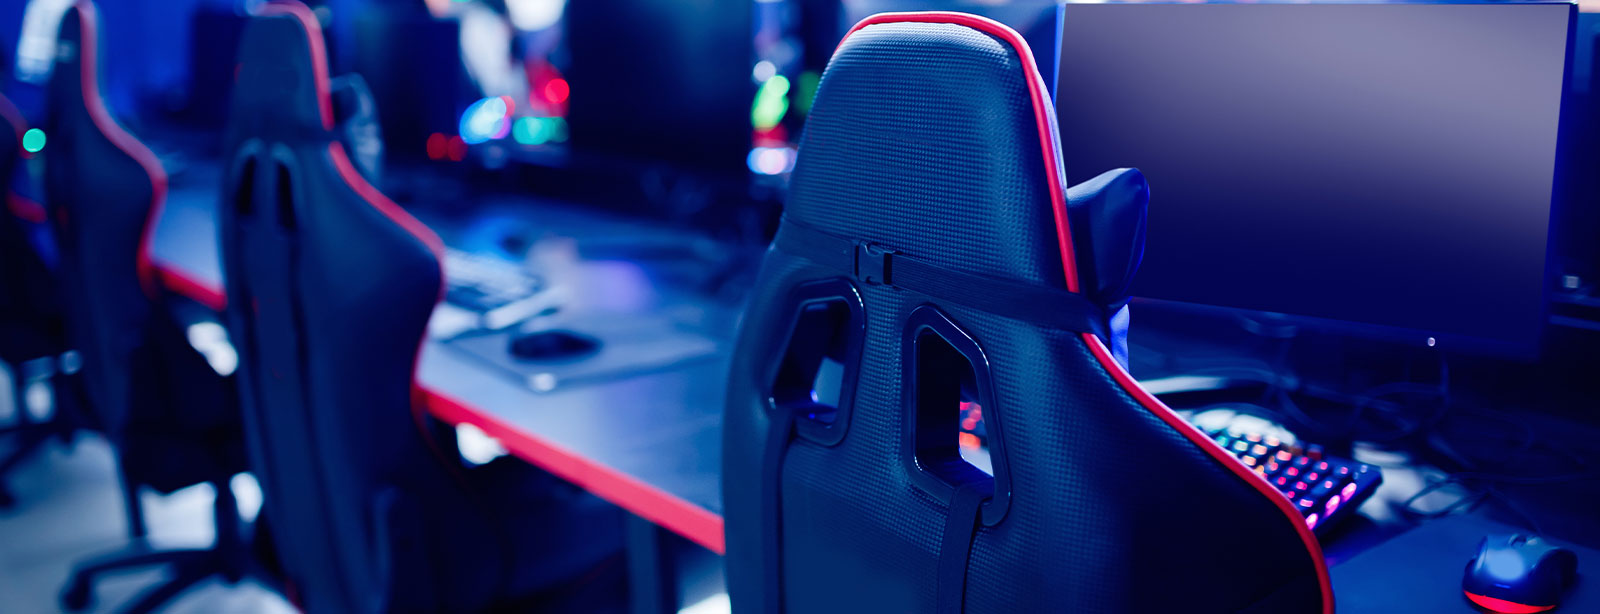 Mejores sillas ergonómicas y gaming de alta gama